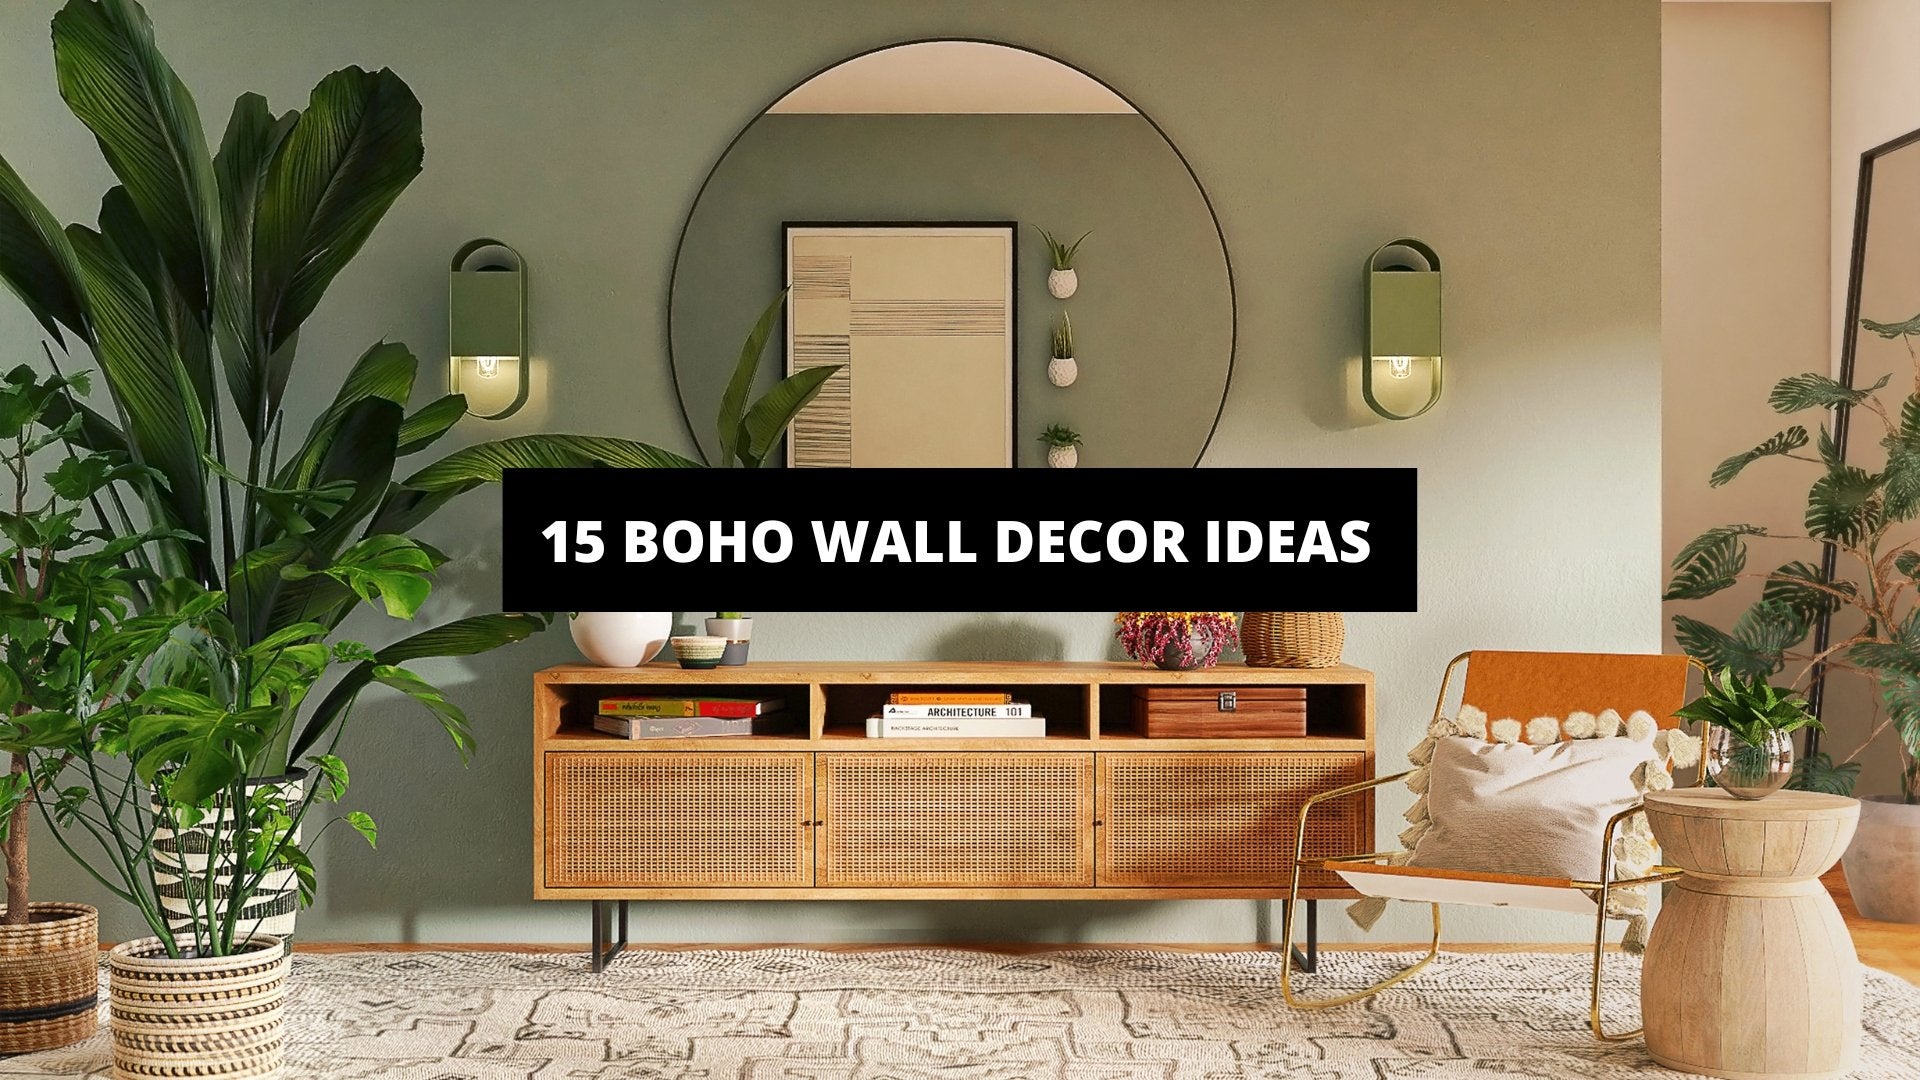 15 Boho Wall Decor Ideas | The Trendy Art